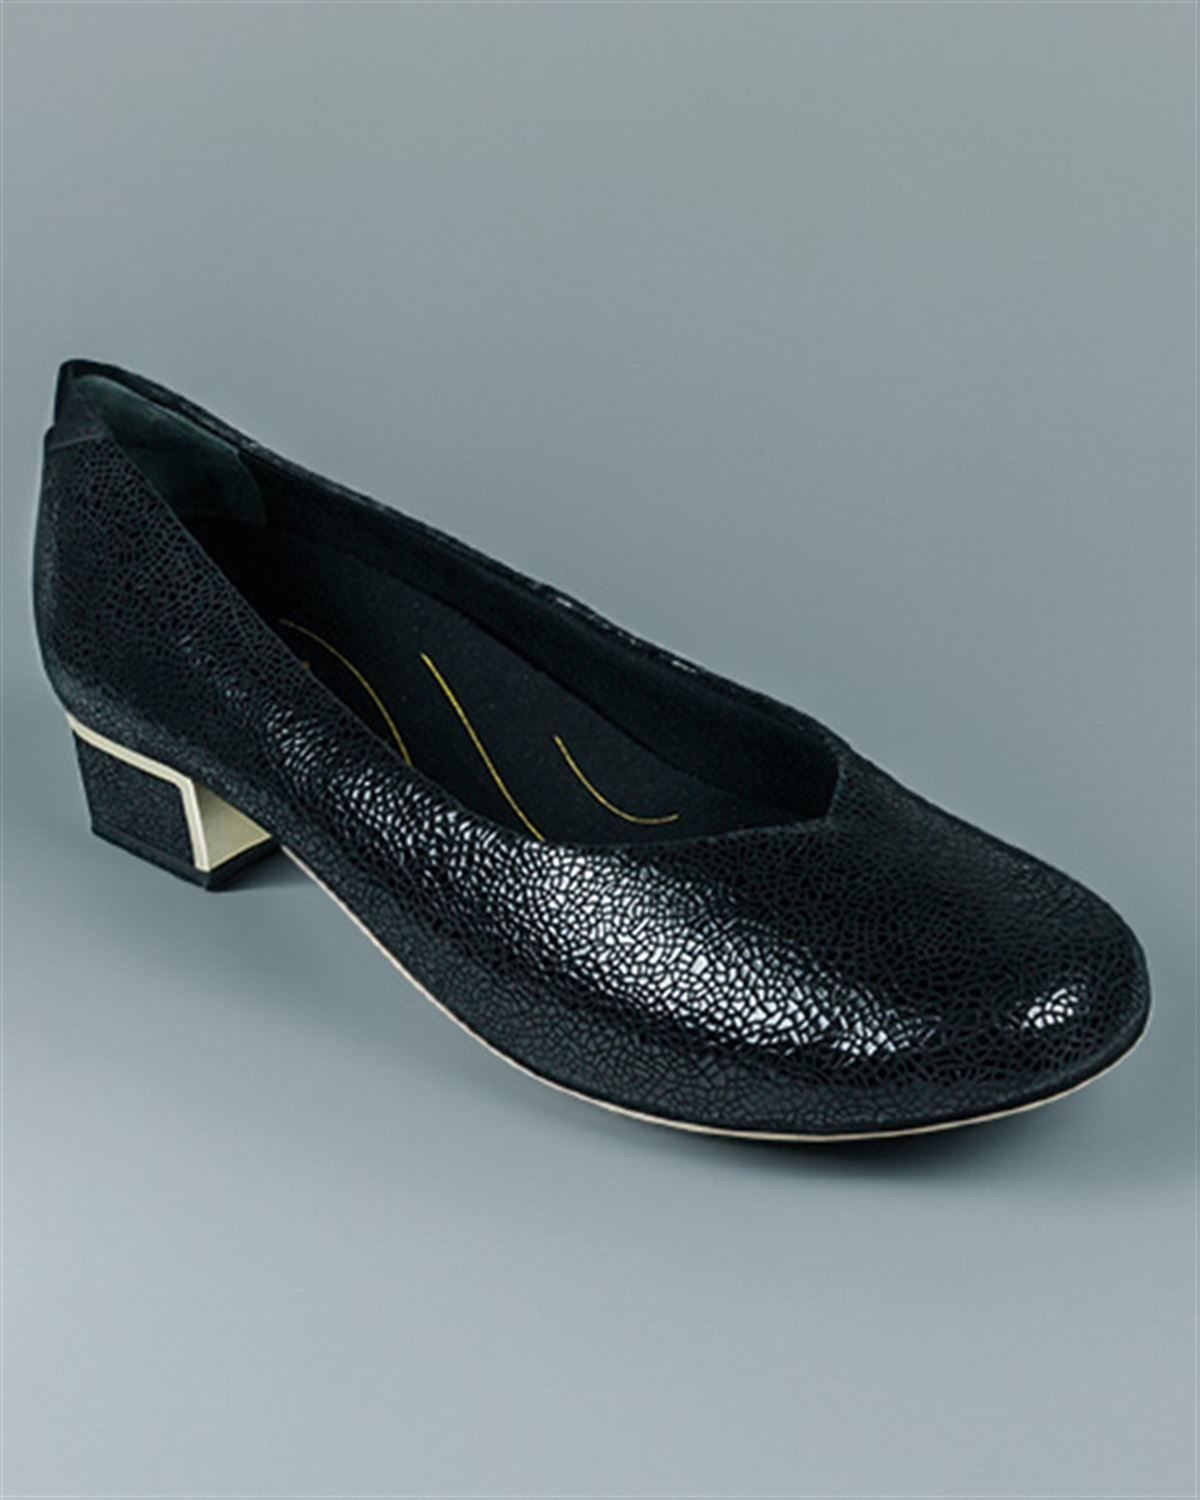 Ladies Van Dal Reece Shoe. Soft leather court shoe.